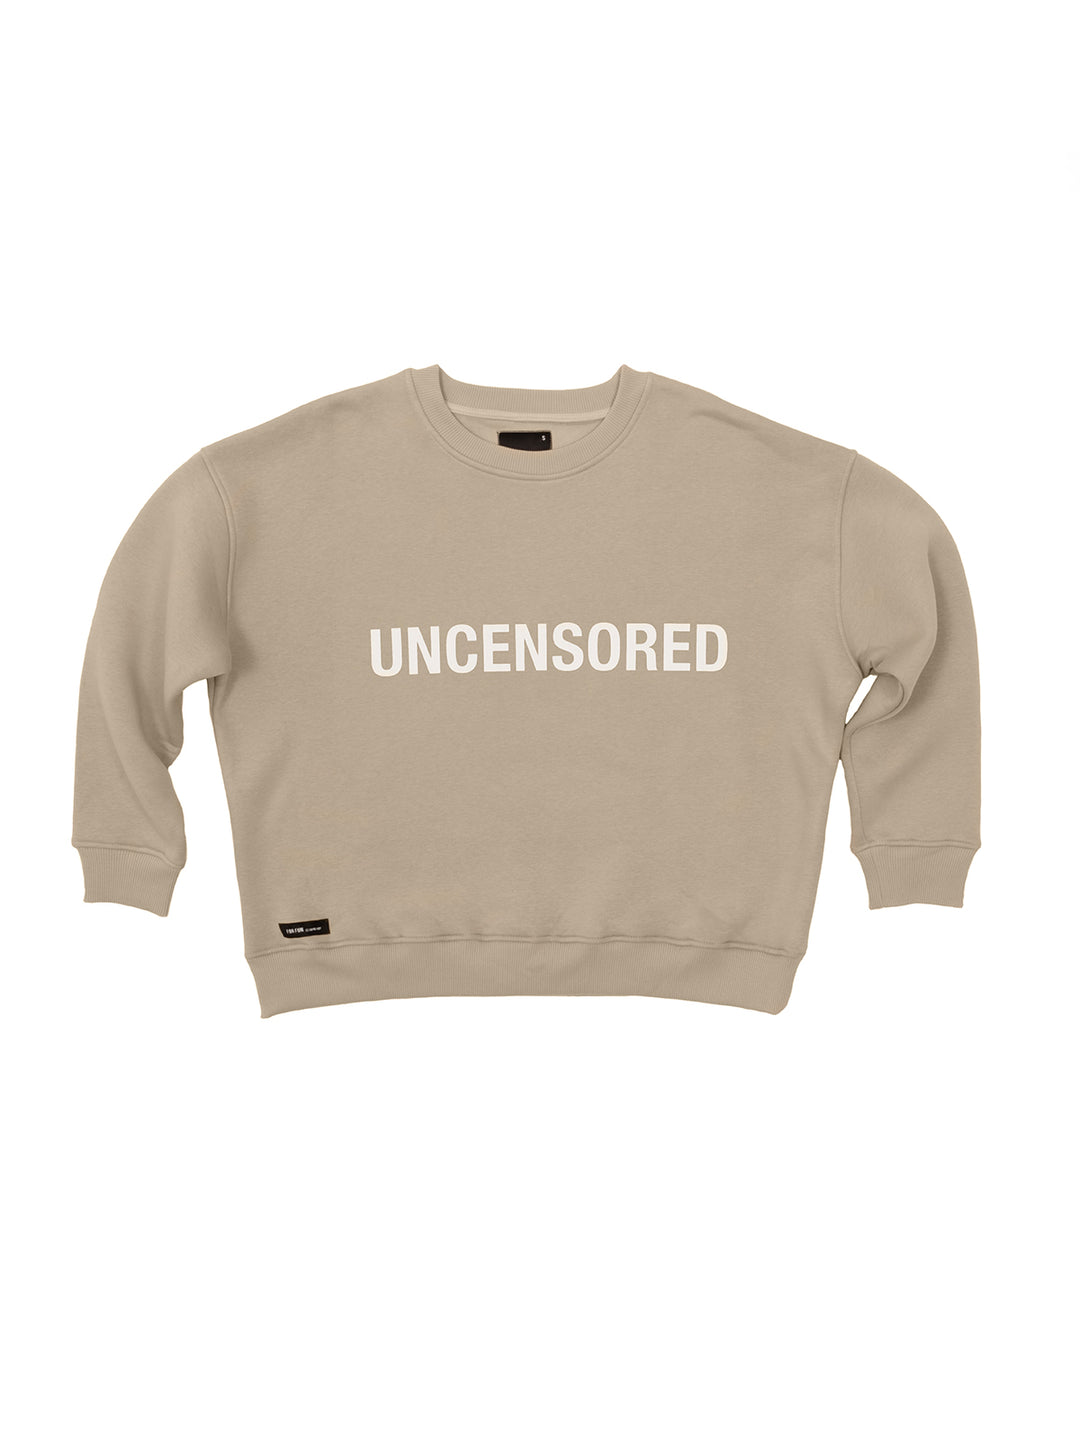 Uncensored / Women's Sweatshirt